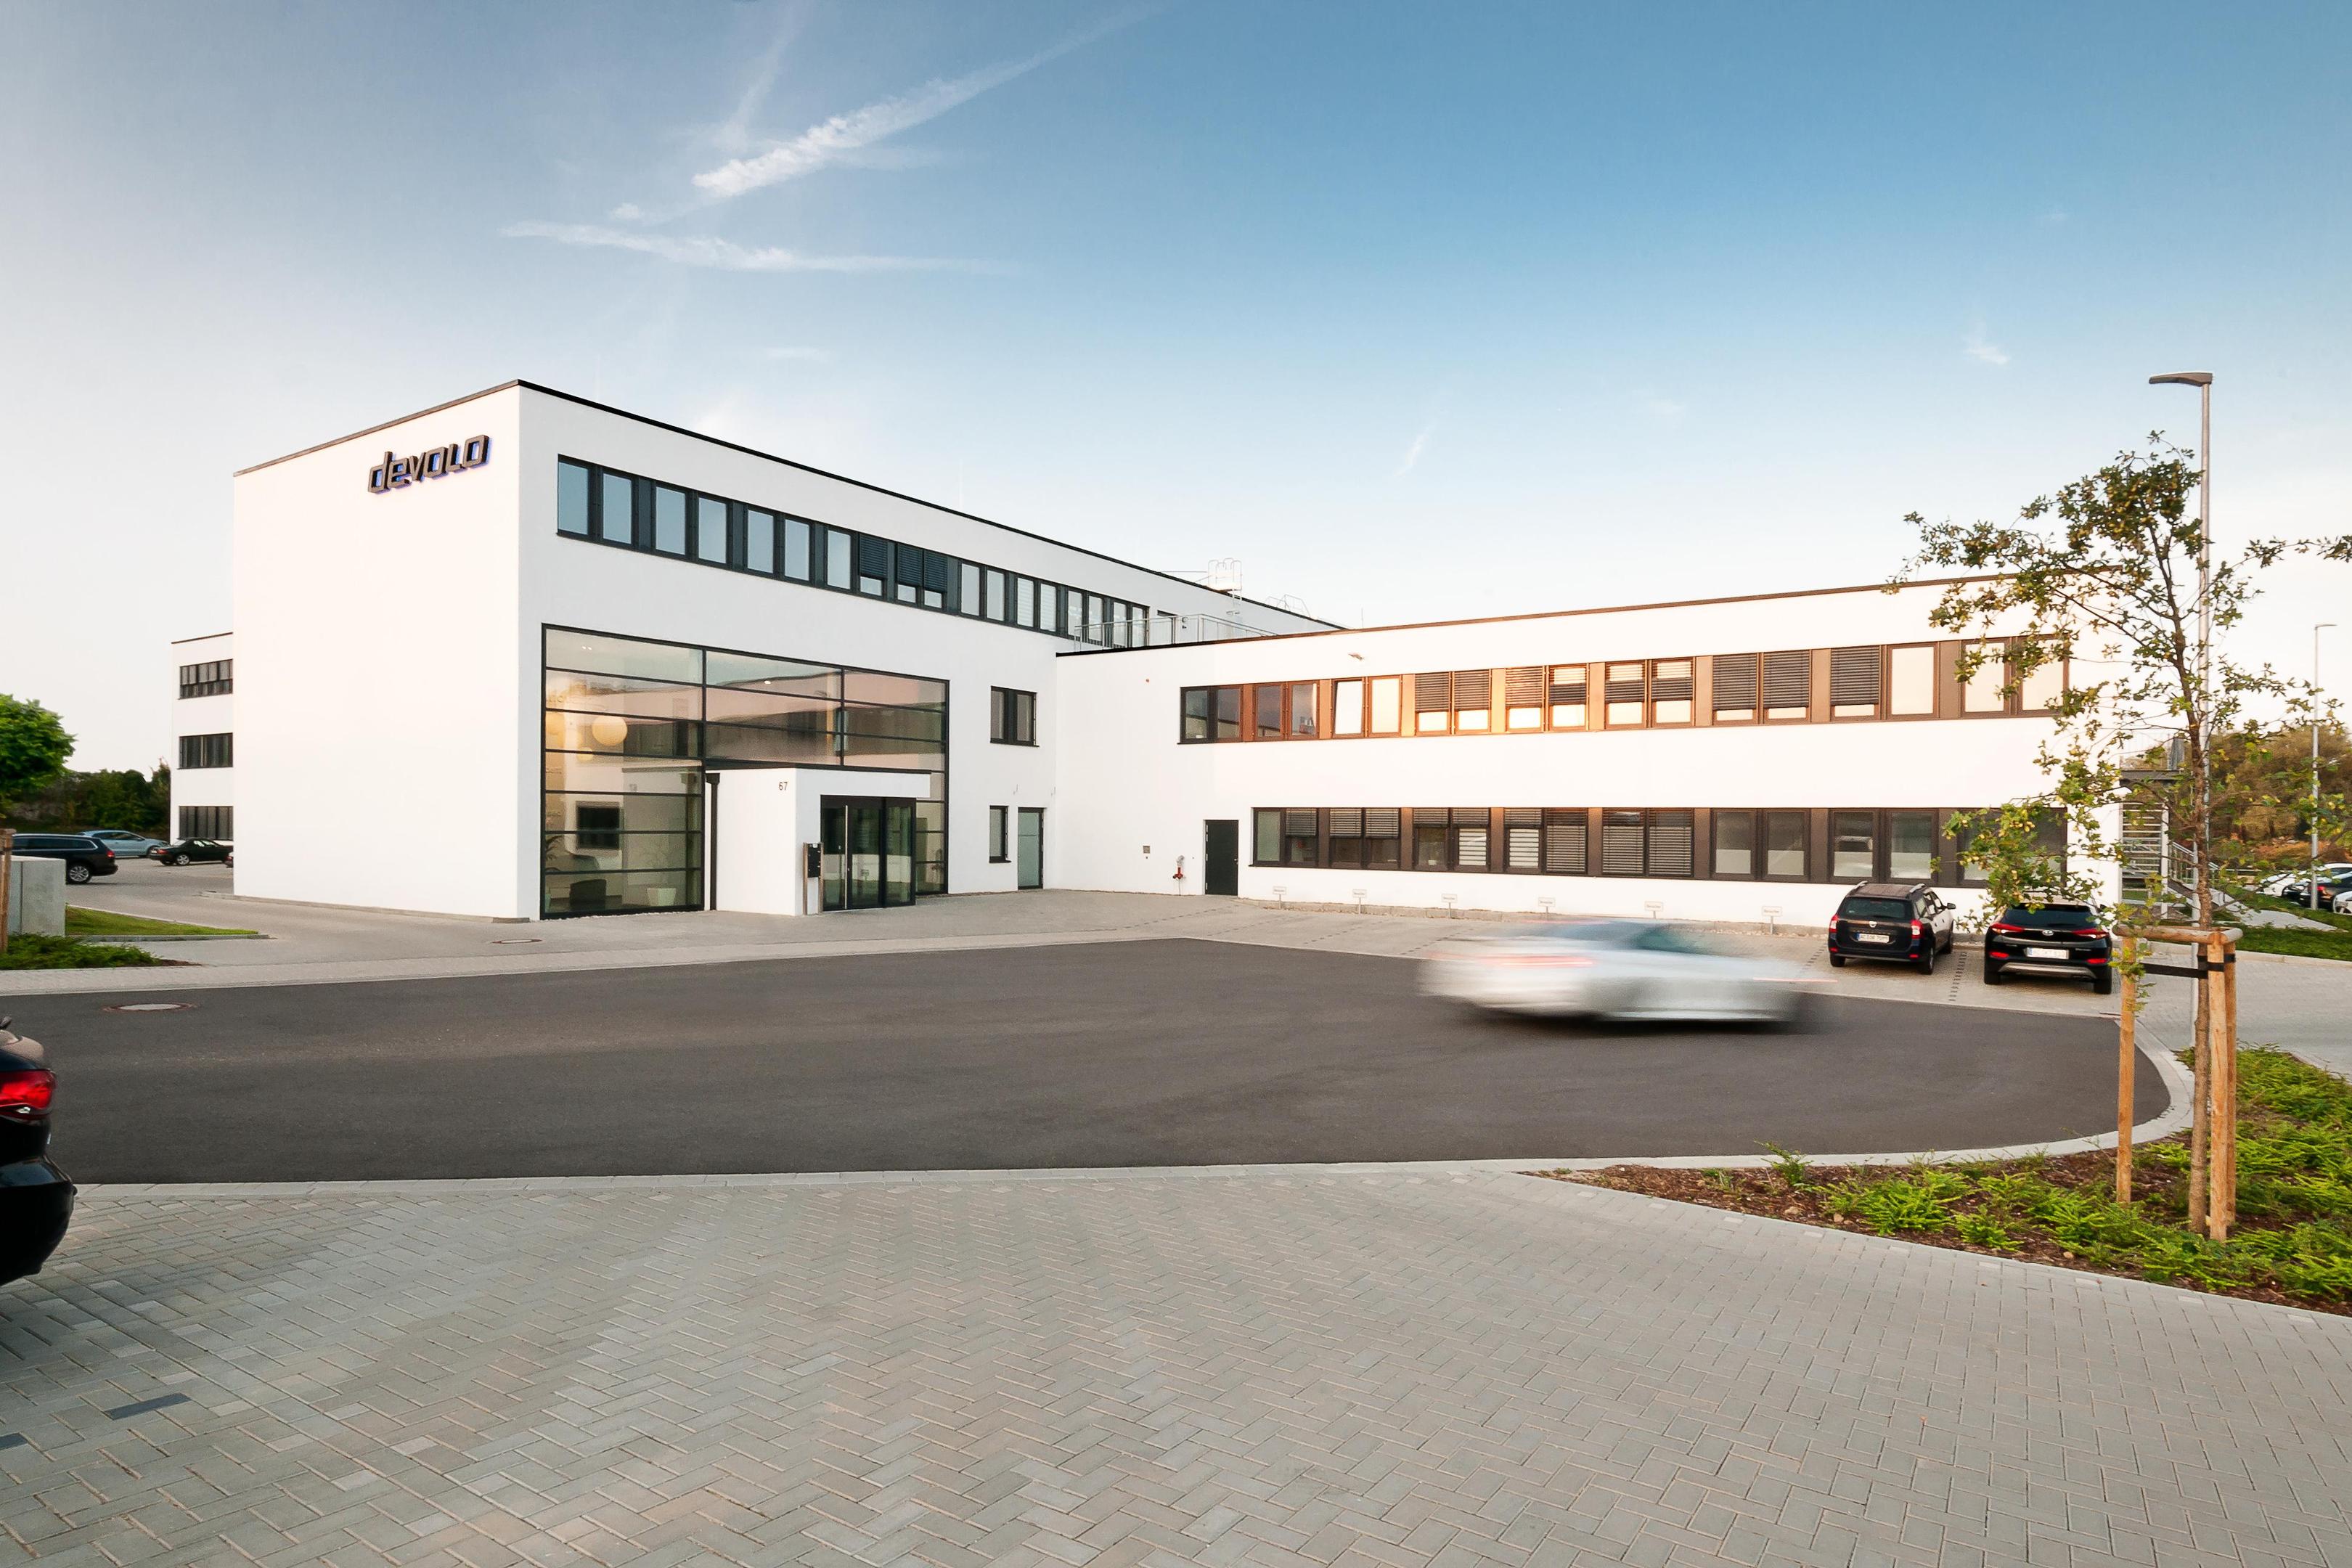 2016 wurde in Aachen der neue Firmensitz von Devolo gebaut. Damals arbeiteten 290 Menschen für das IT-Unternehmen. Heute sind es noch rund 65.